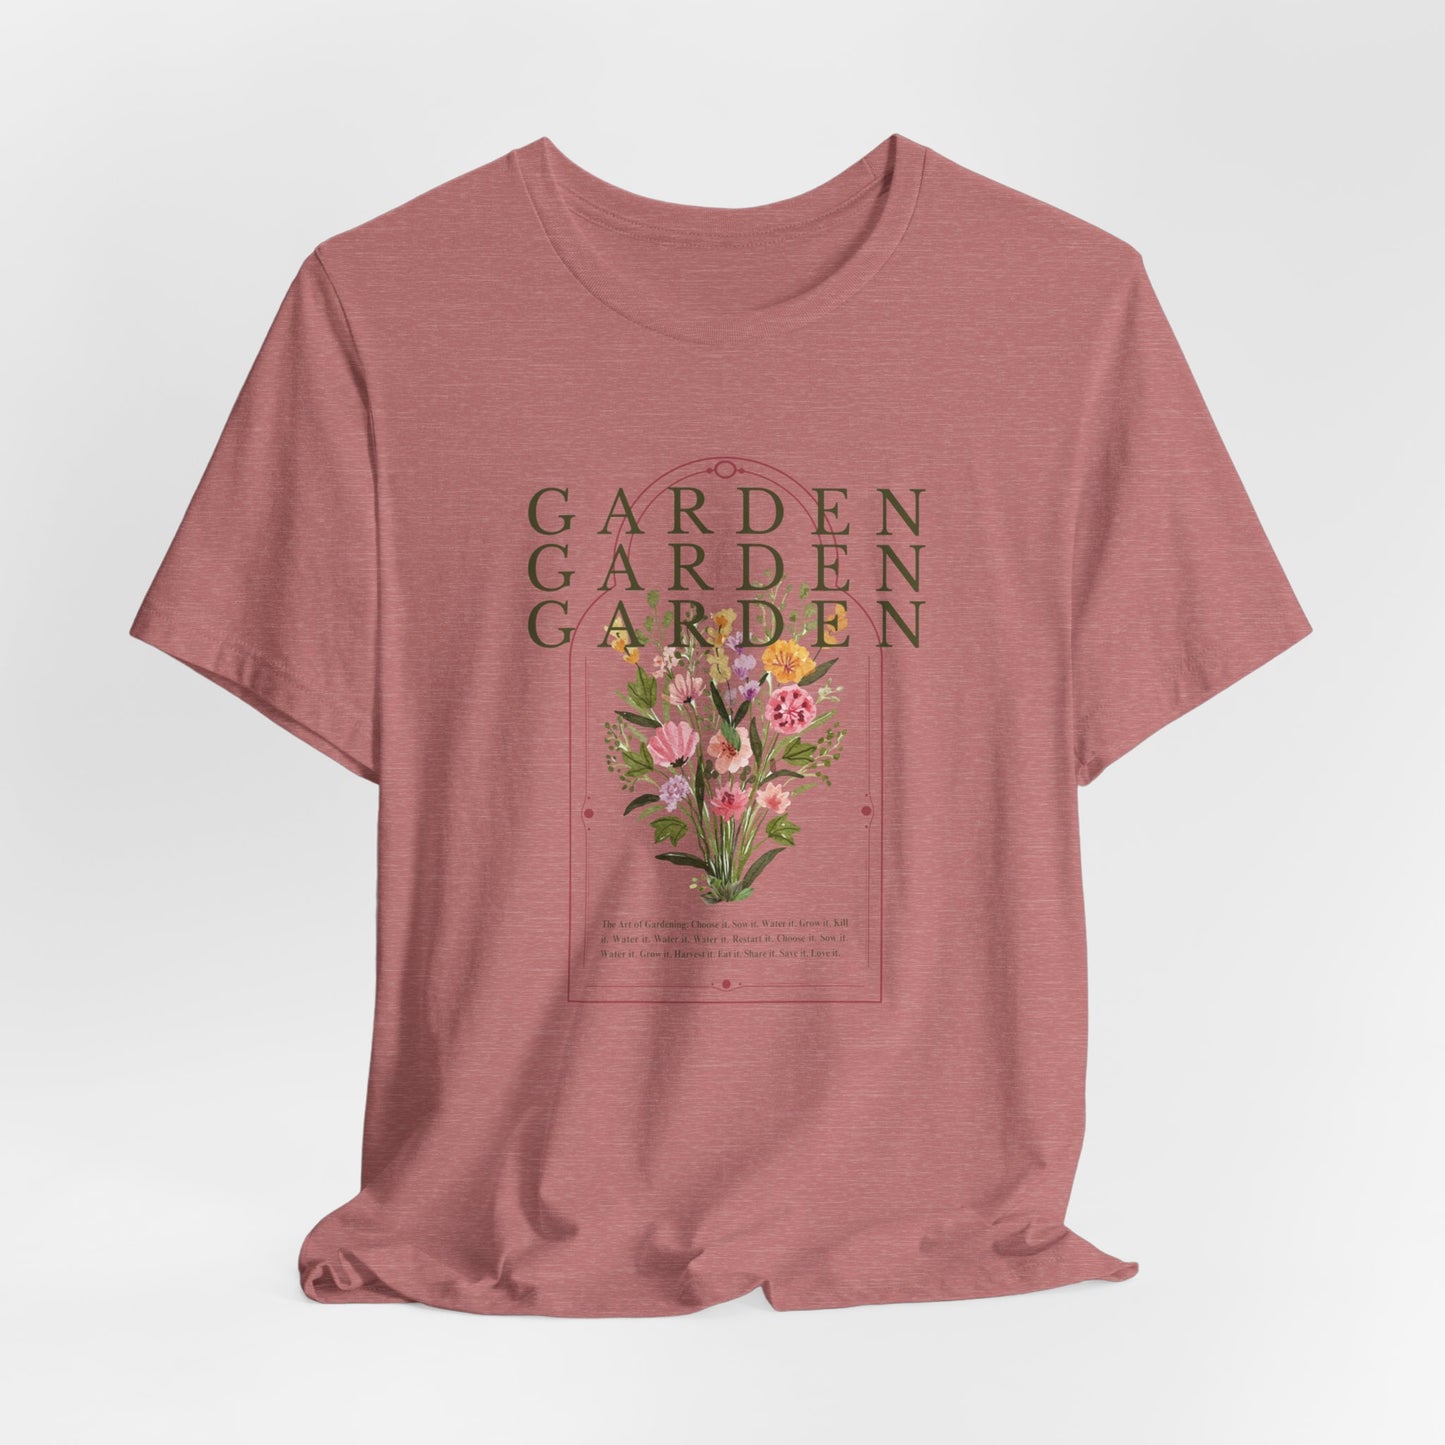 Adult Tee - Garden